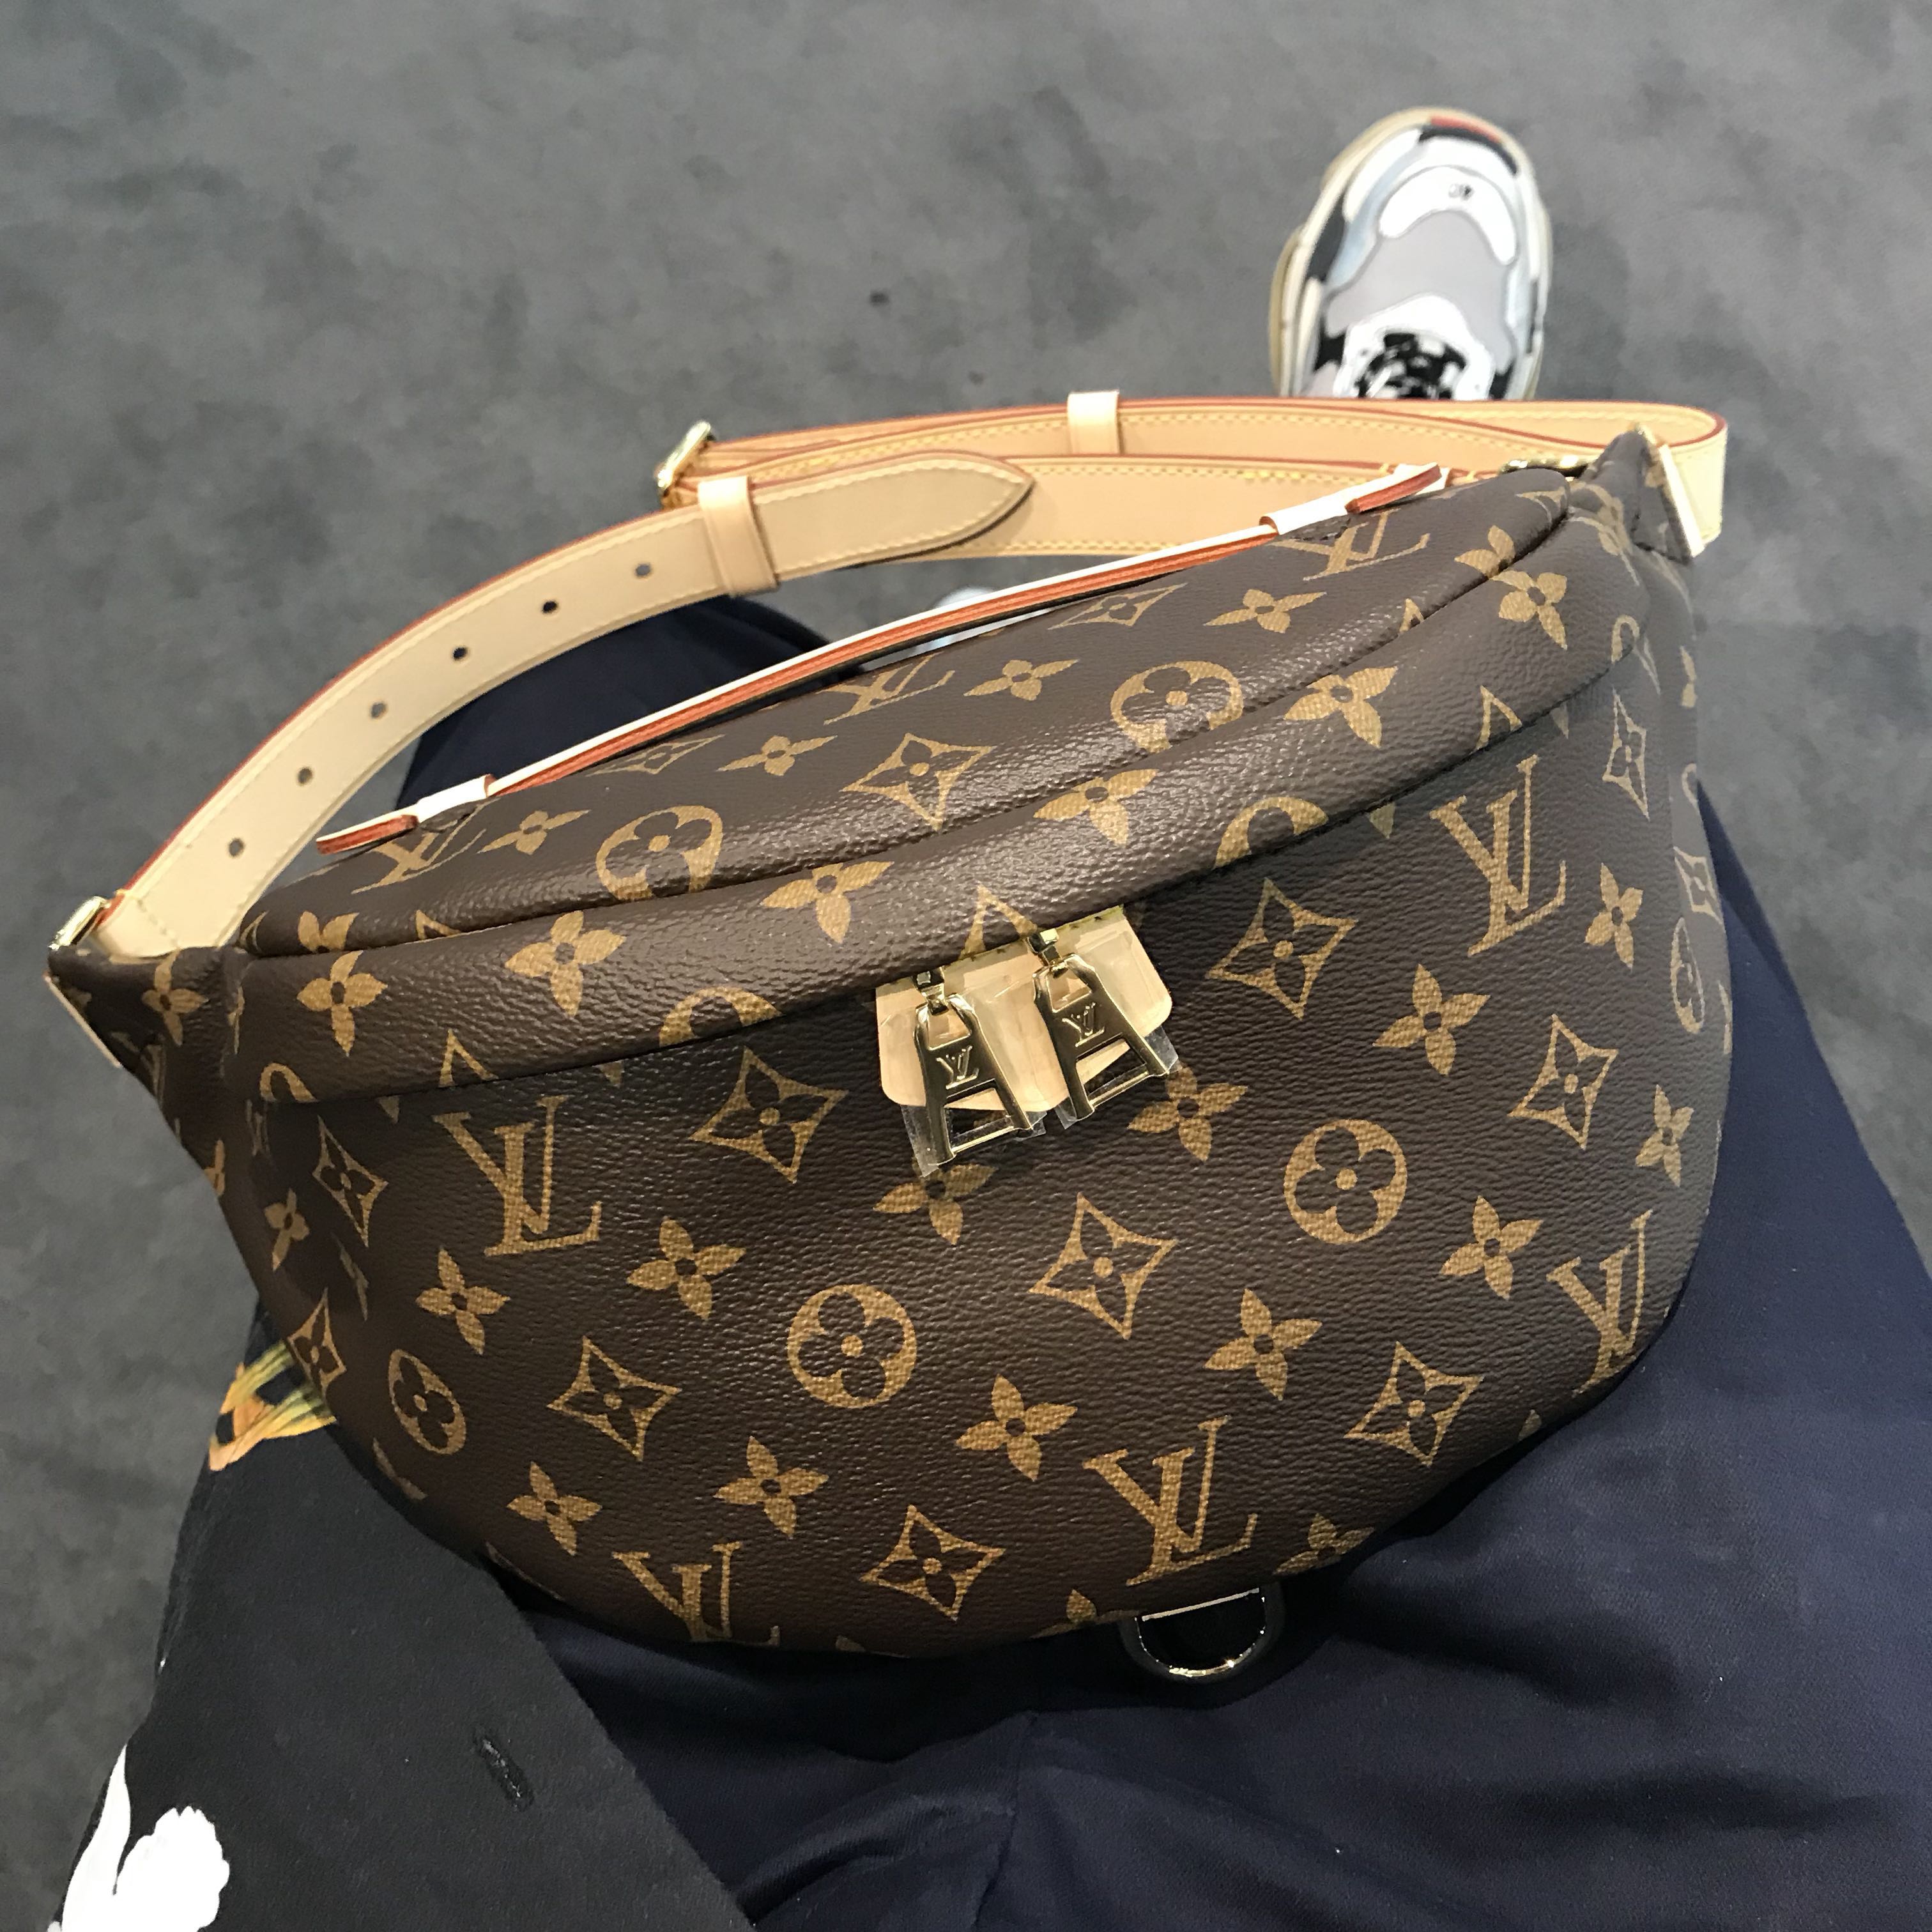 Mens Louis Vuitton Christopher Bumbag Bag